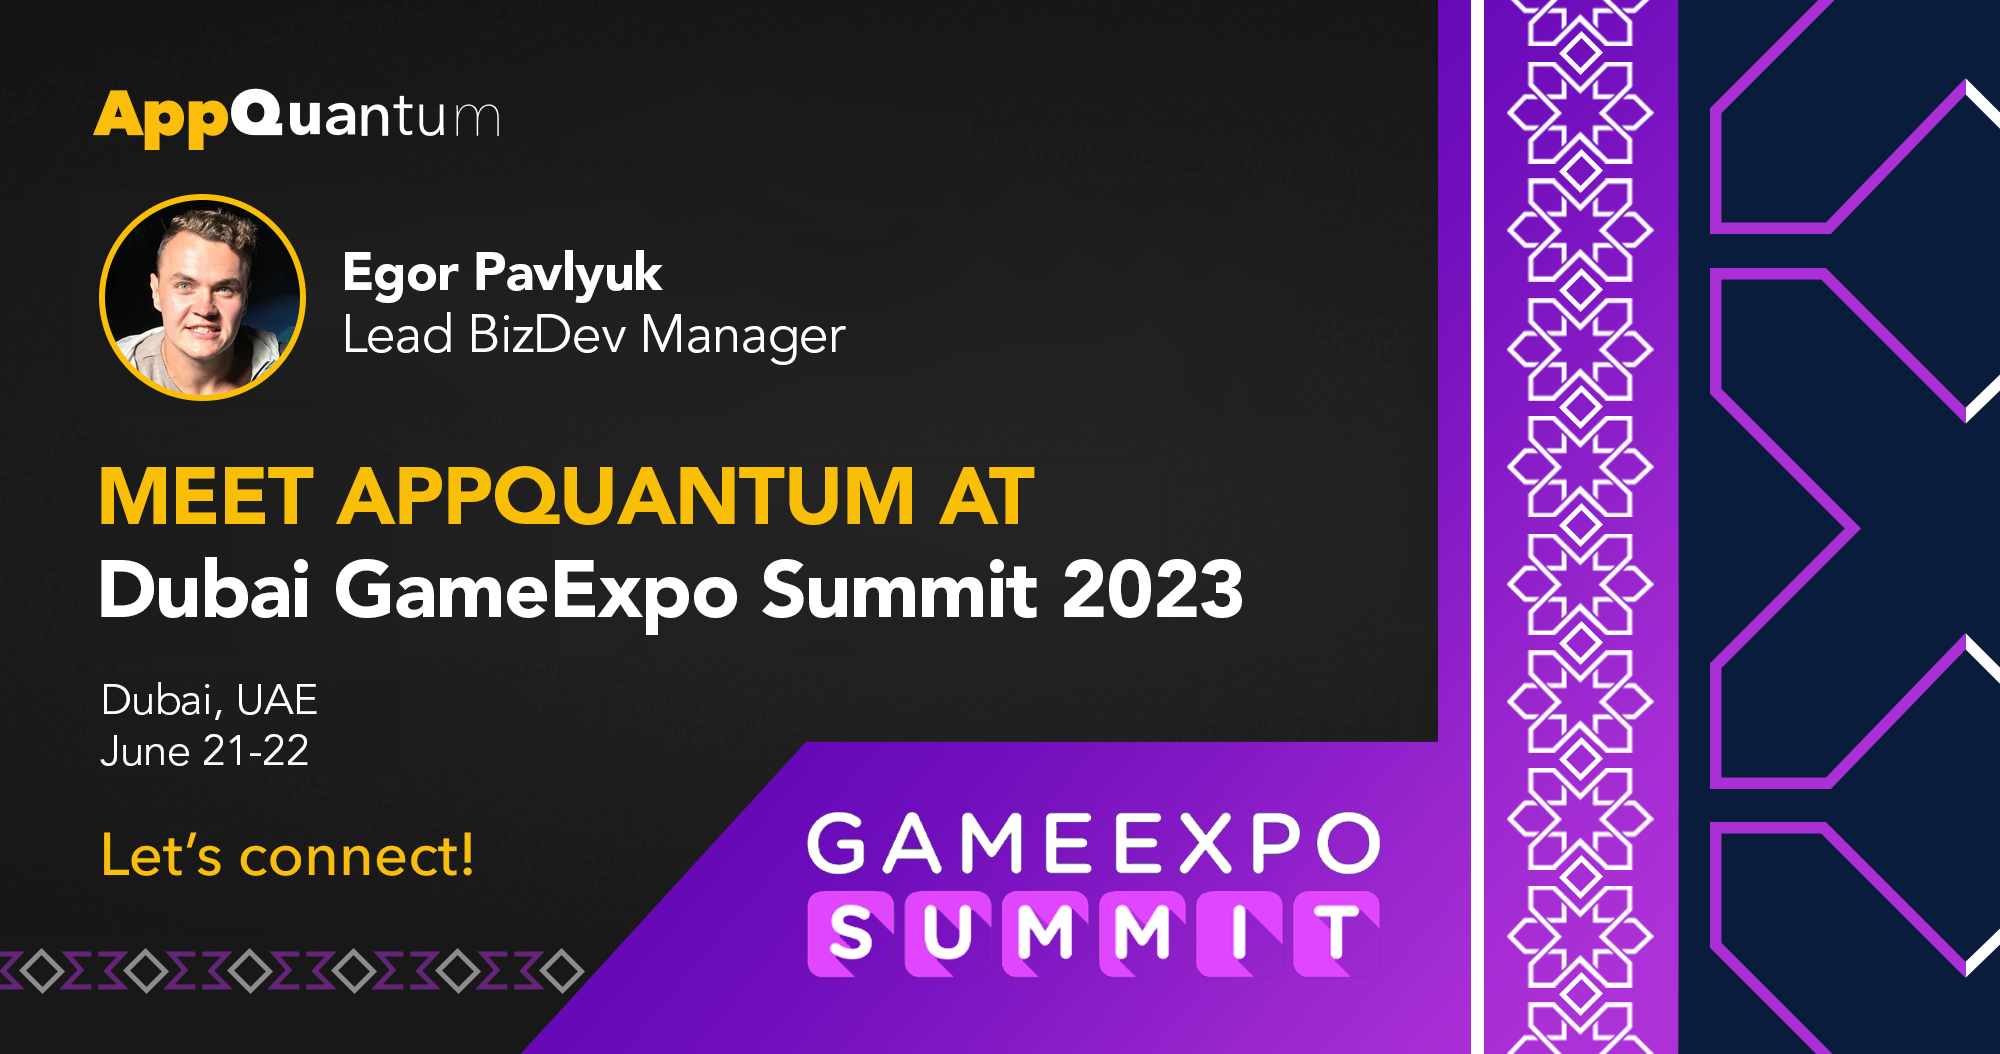 Meet AppQuantum at Dubai GameExpo Summit 2023!